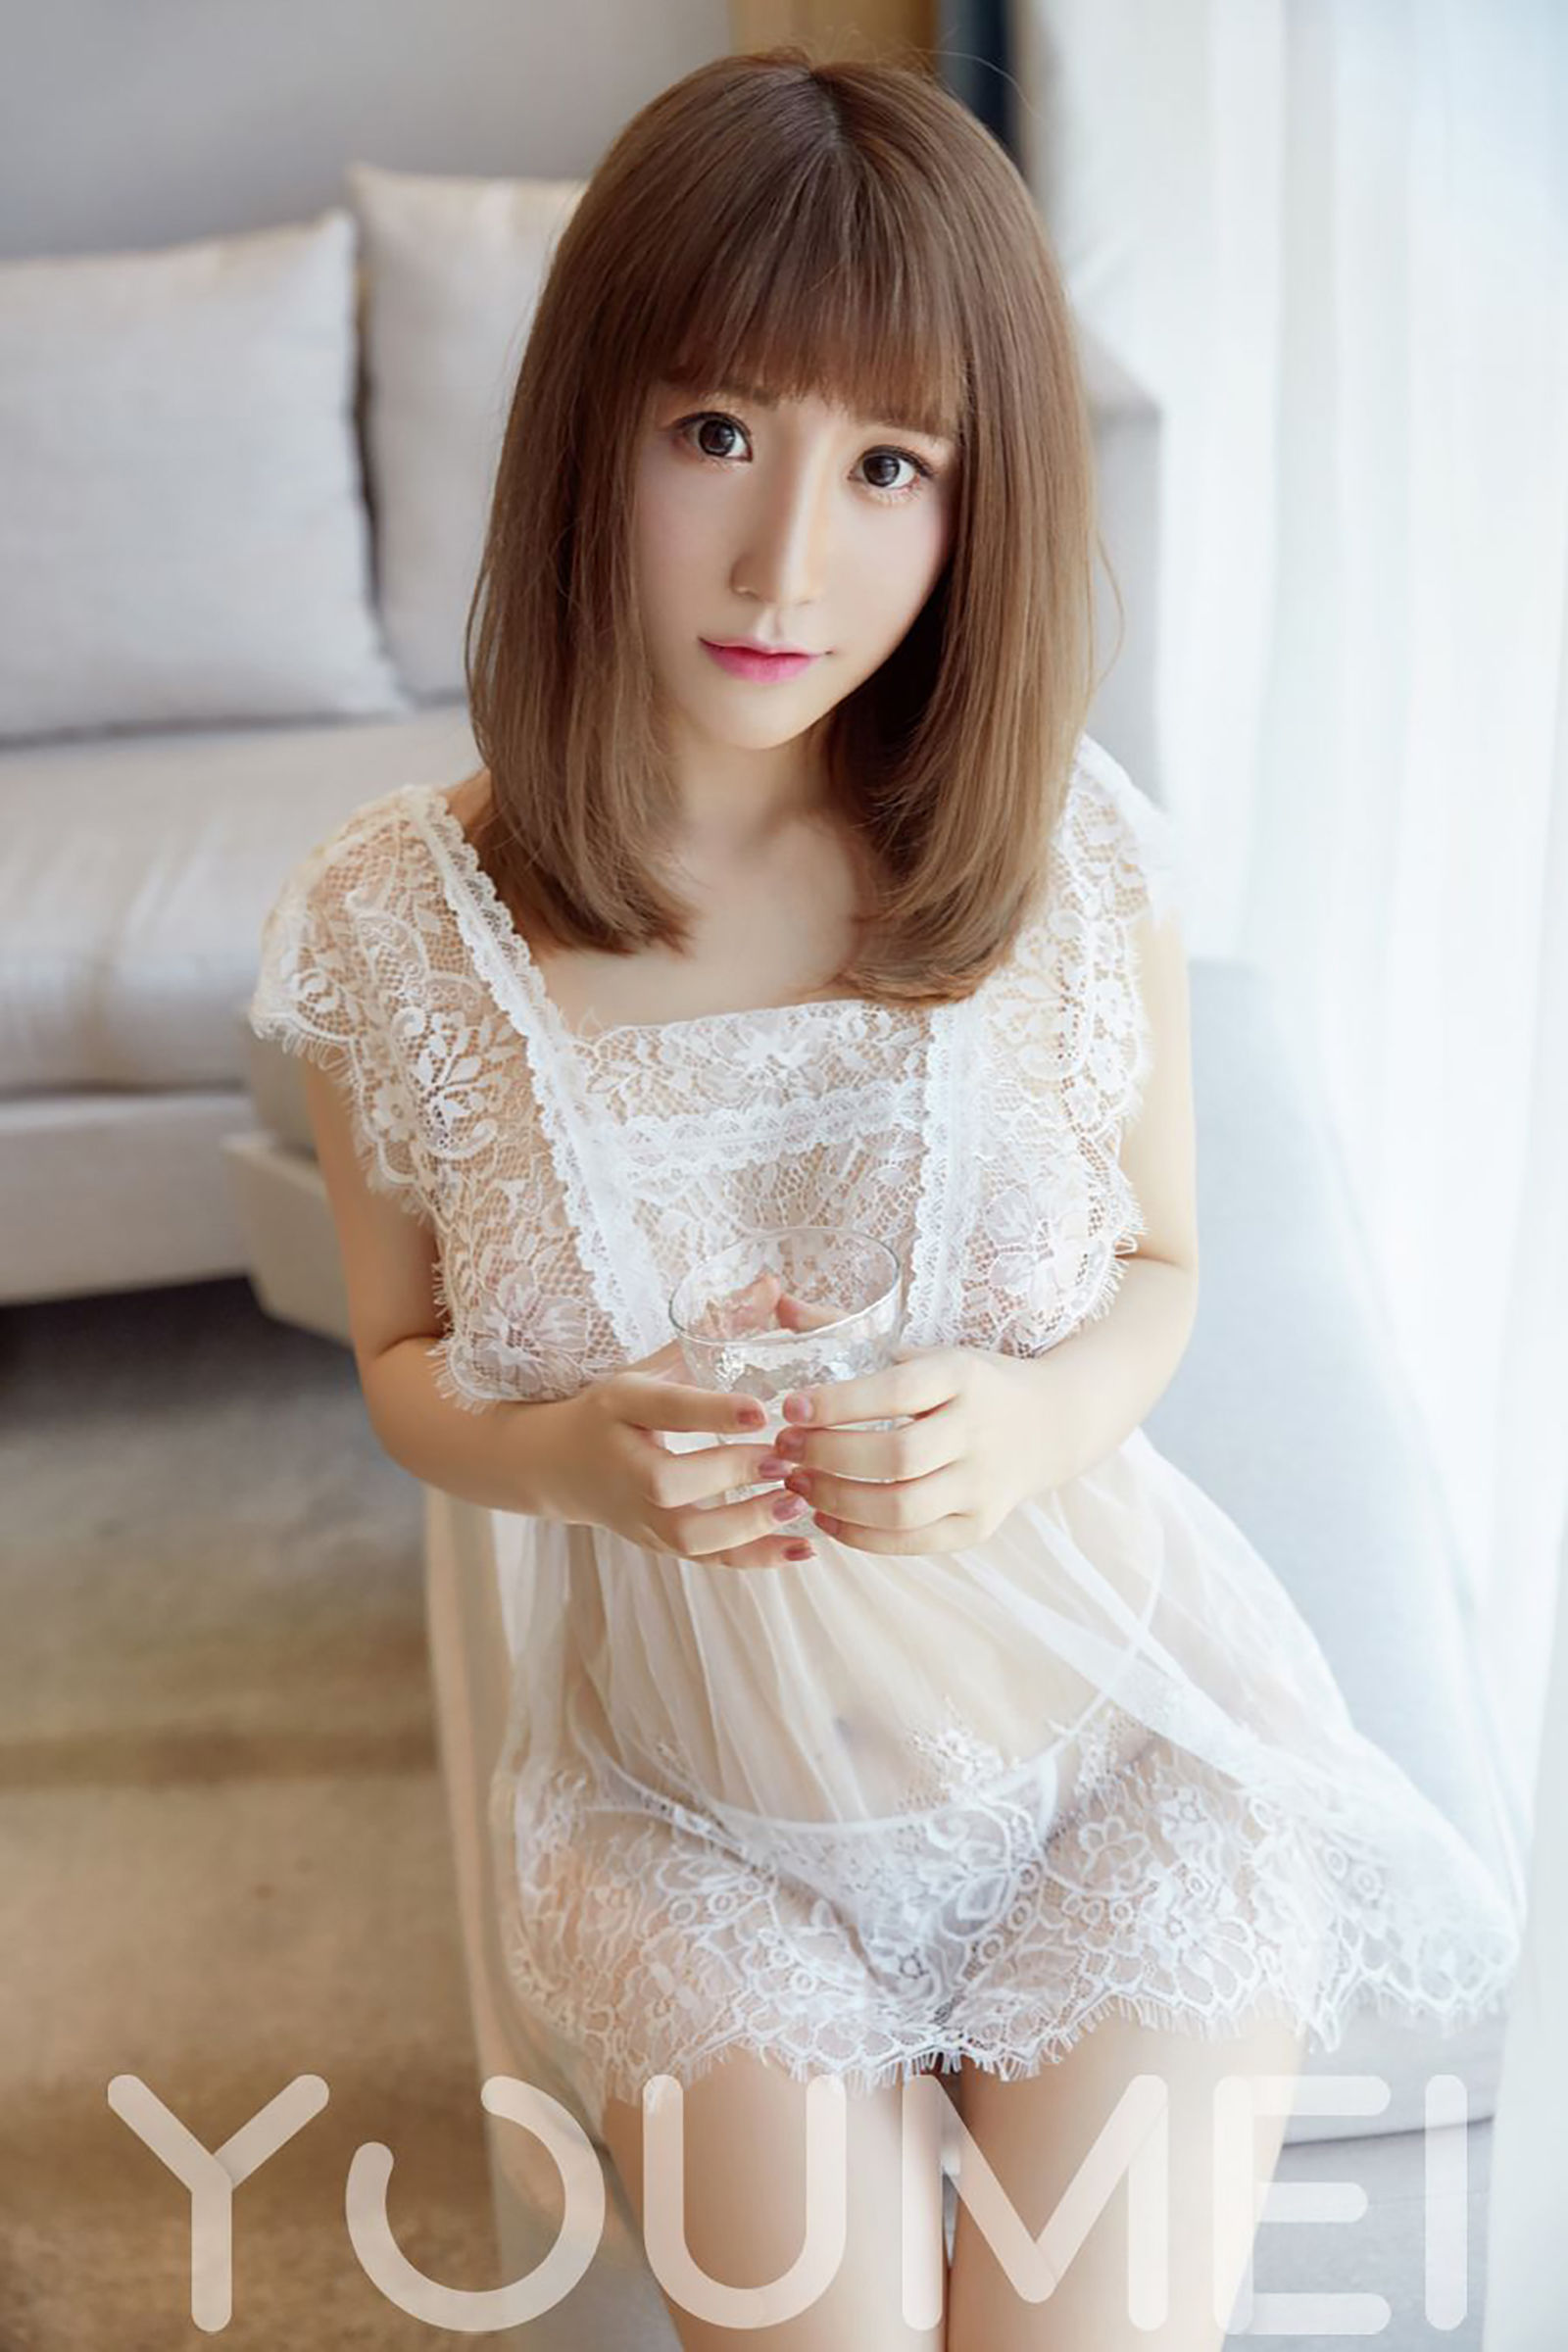 Fei Yue Sakura-Cherry “Pure White Lace” (YouMei) Vol.027 Photo Album